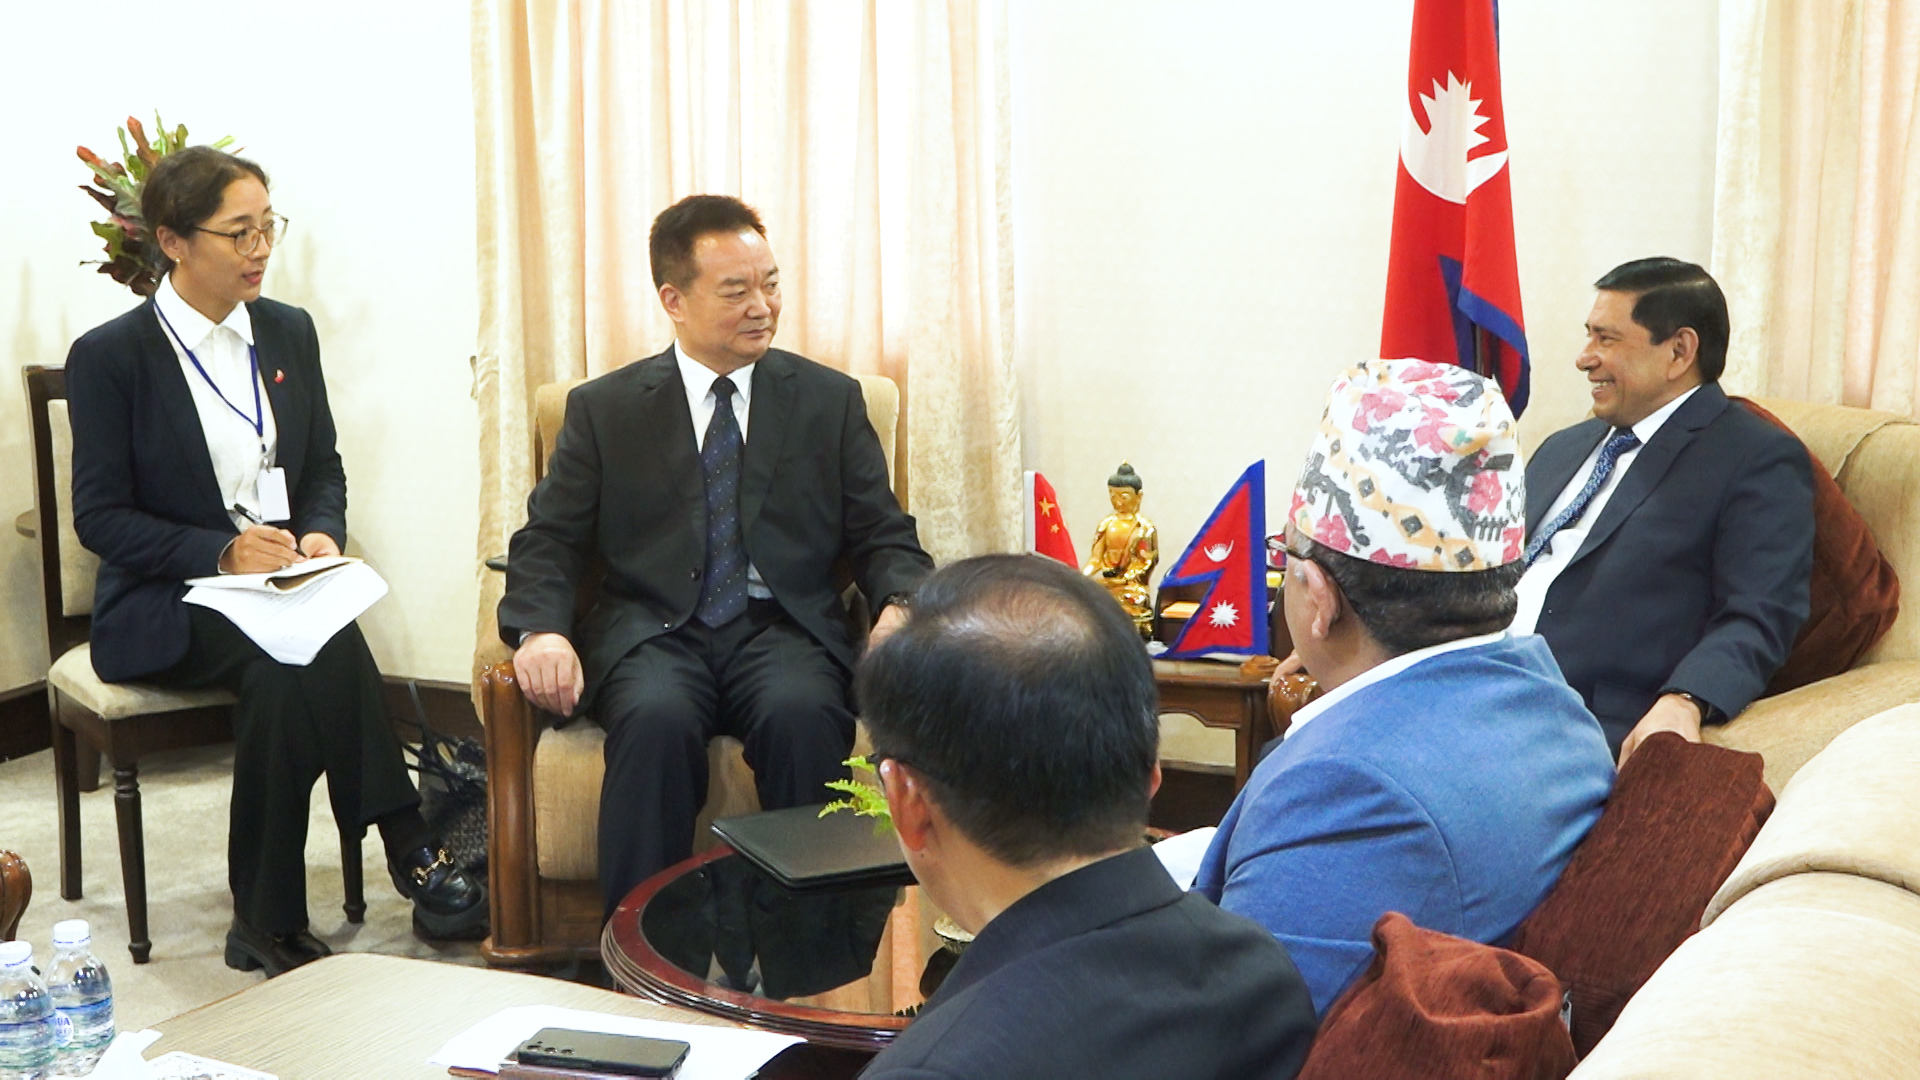 उपप्रधानमन्त्री श्रेष्ठ र चिनियाँ कम्युनिष्ट पार्टी तिब्बतका सेक्रेटरी वाङबीच भेटवार्ता 